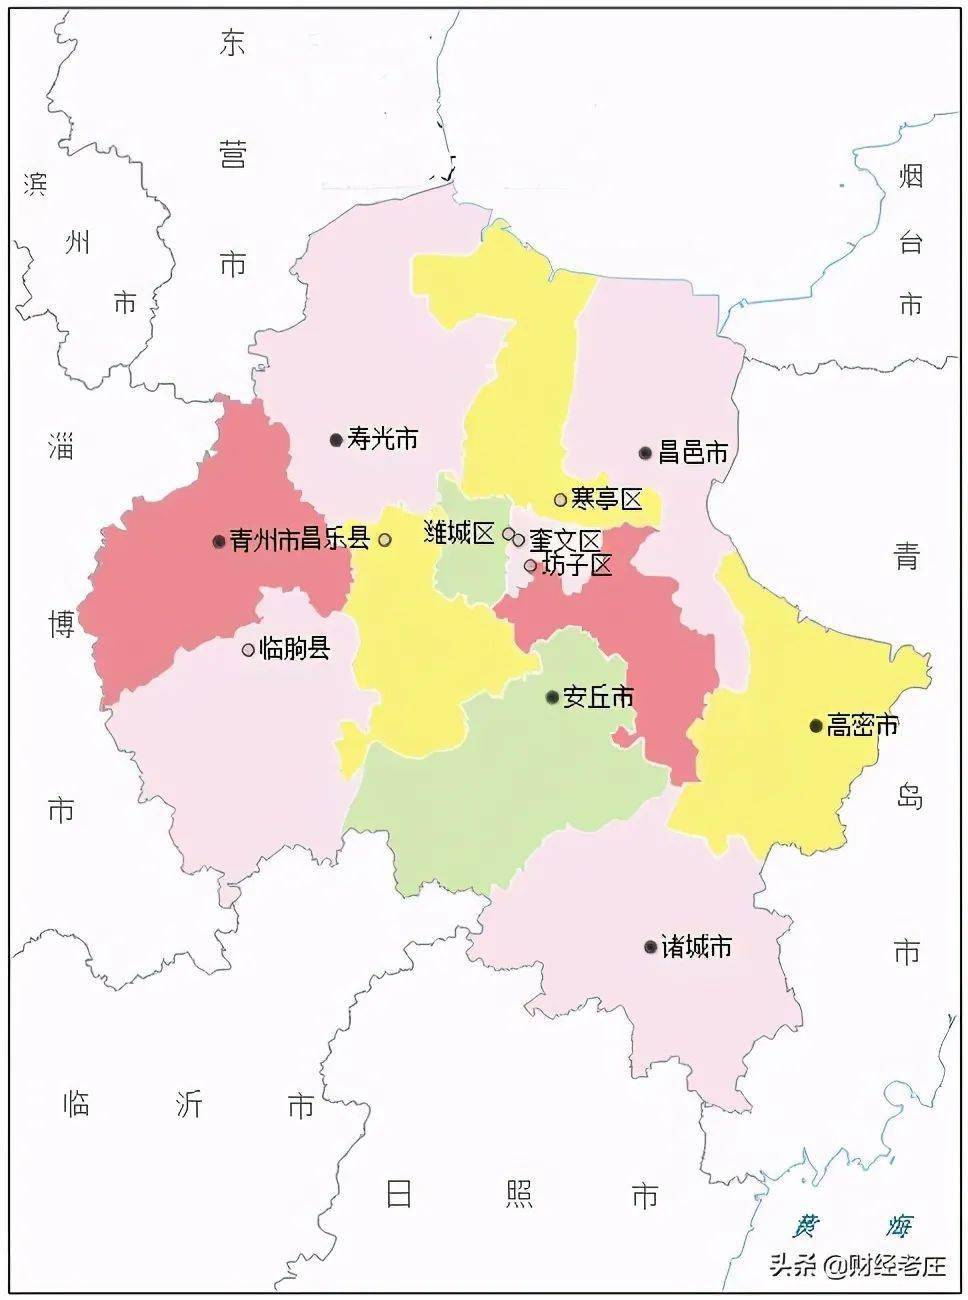 潍坊市位于山东半岛西部,是山东省地级市,国务院确定的山东省半岛城市